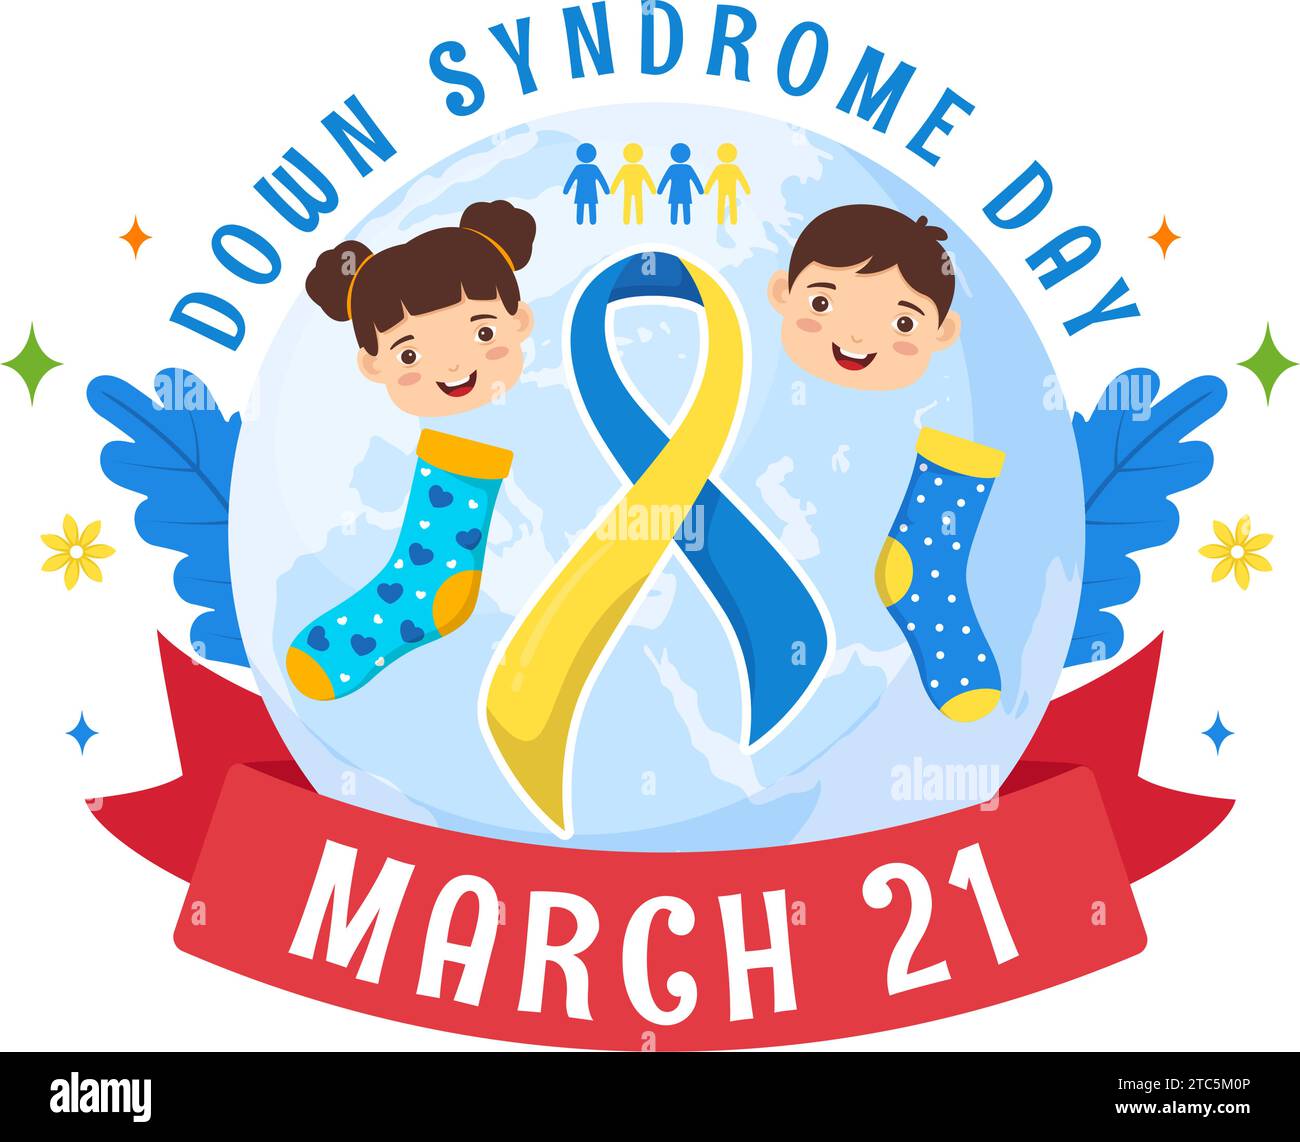 Ilustración vectorial del Día Mundial del Síndrome de Down el 21 de marzo con cinta azul y amarilla, mapa de la Tierra, calcetines sin pareja y niños en fondo plano de dibujos animados Ilustración del Vector